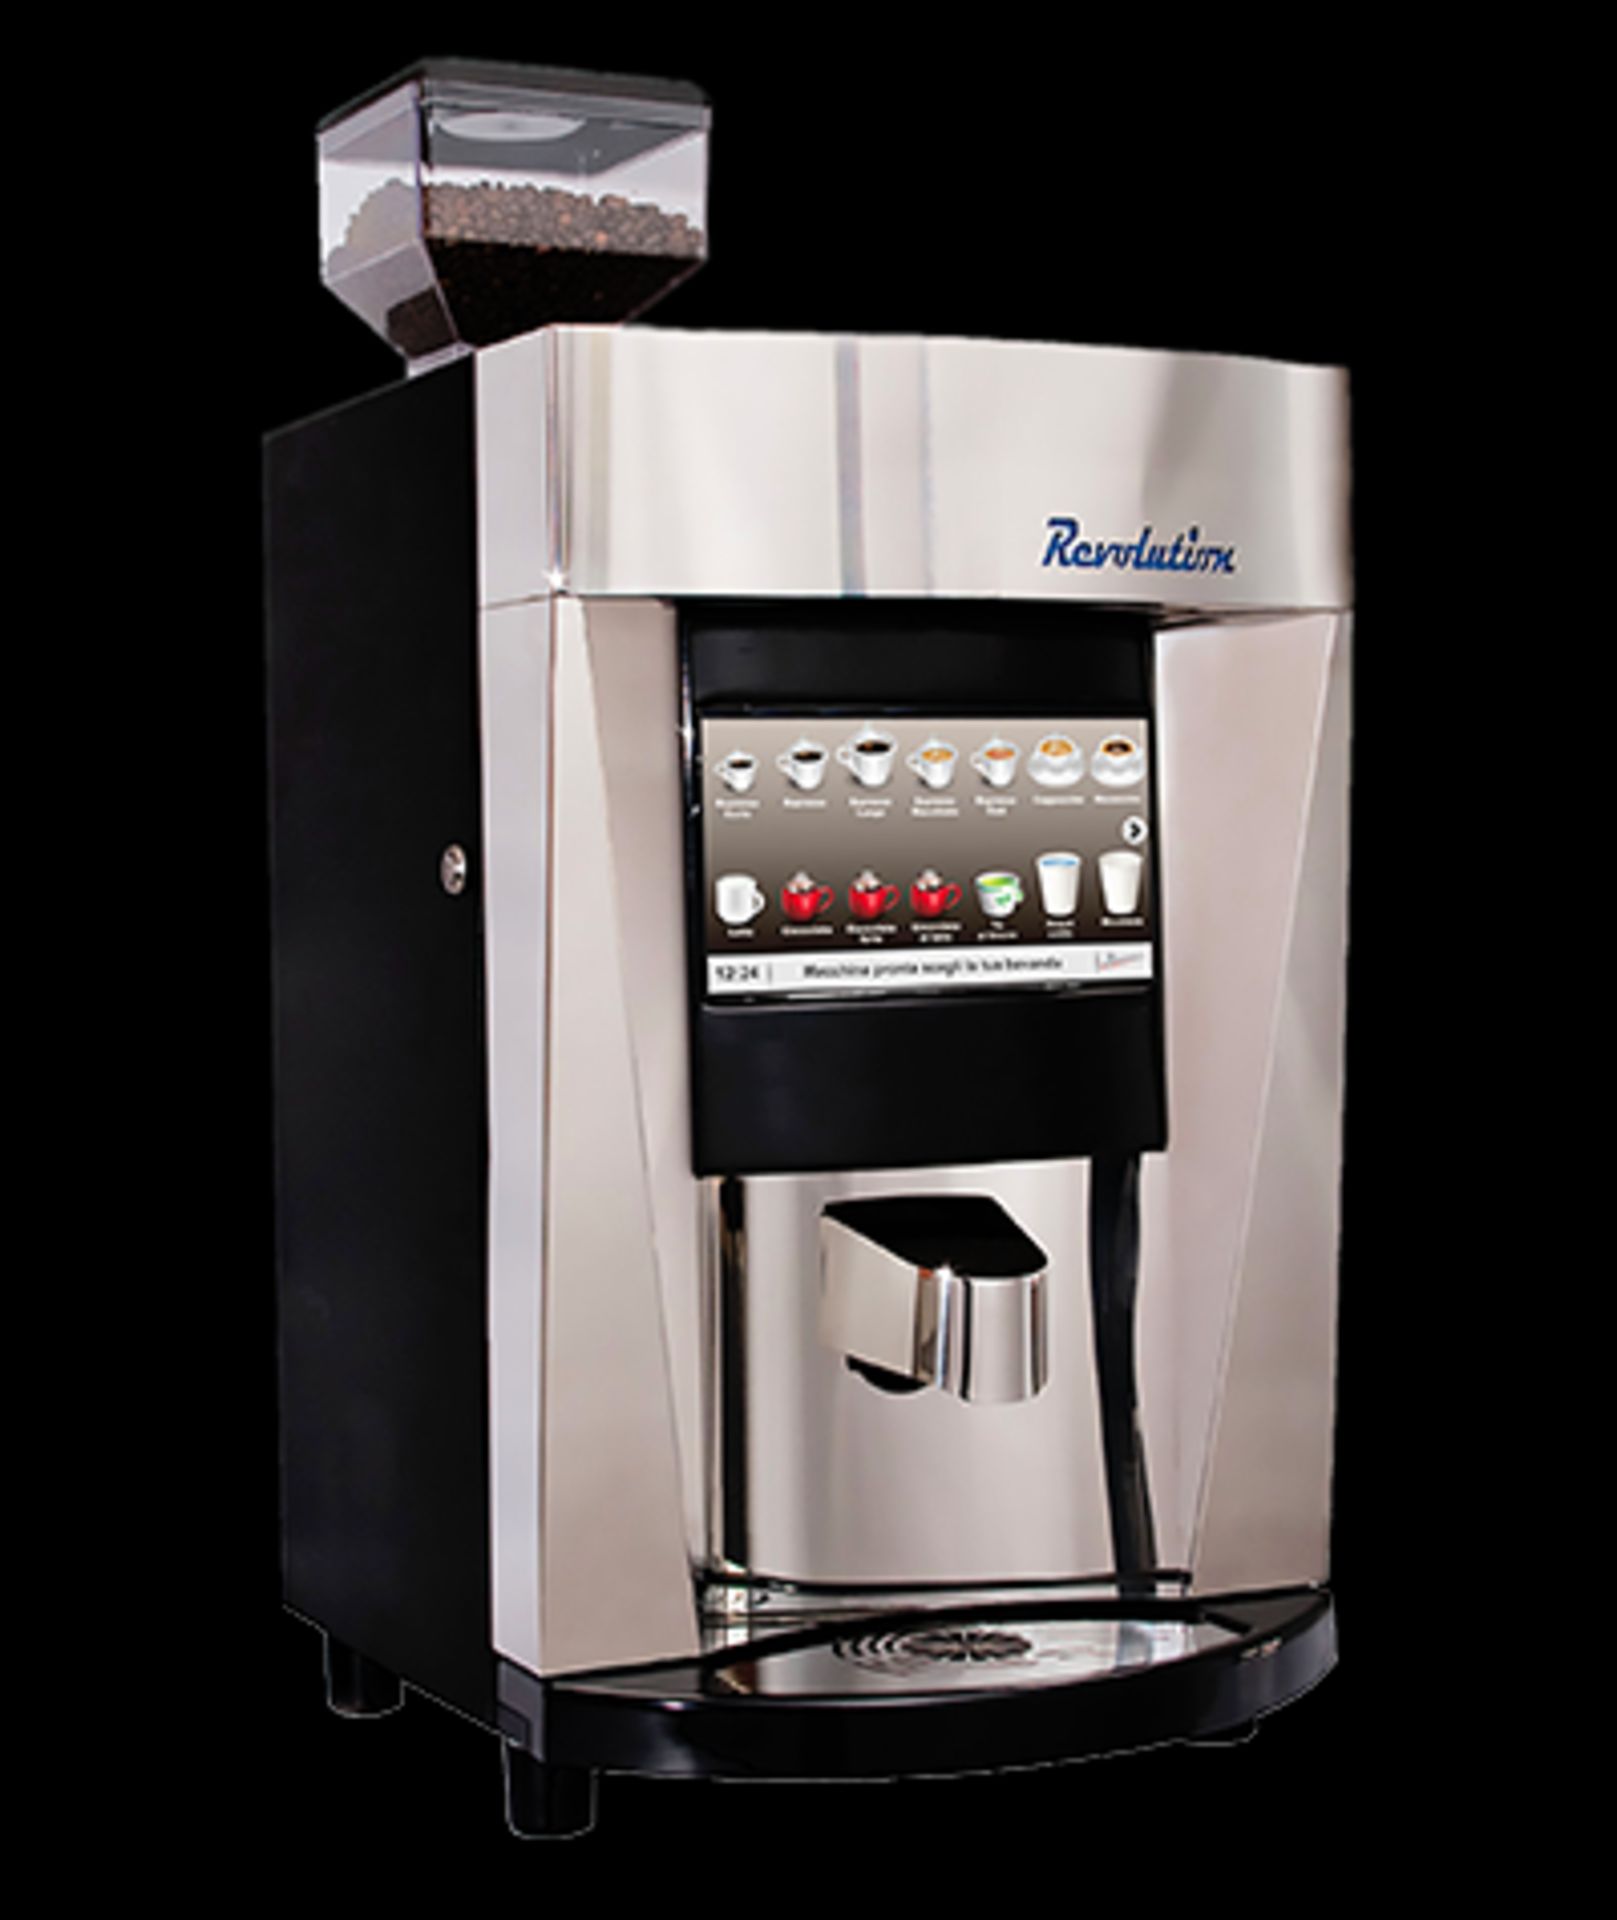 1 x Revolution Single Hopper Automatic Espresso Machine - Ref: LD438 - CL443 - Location: Altrincham - Image 9 of 17